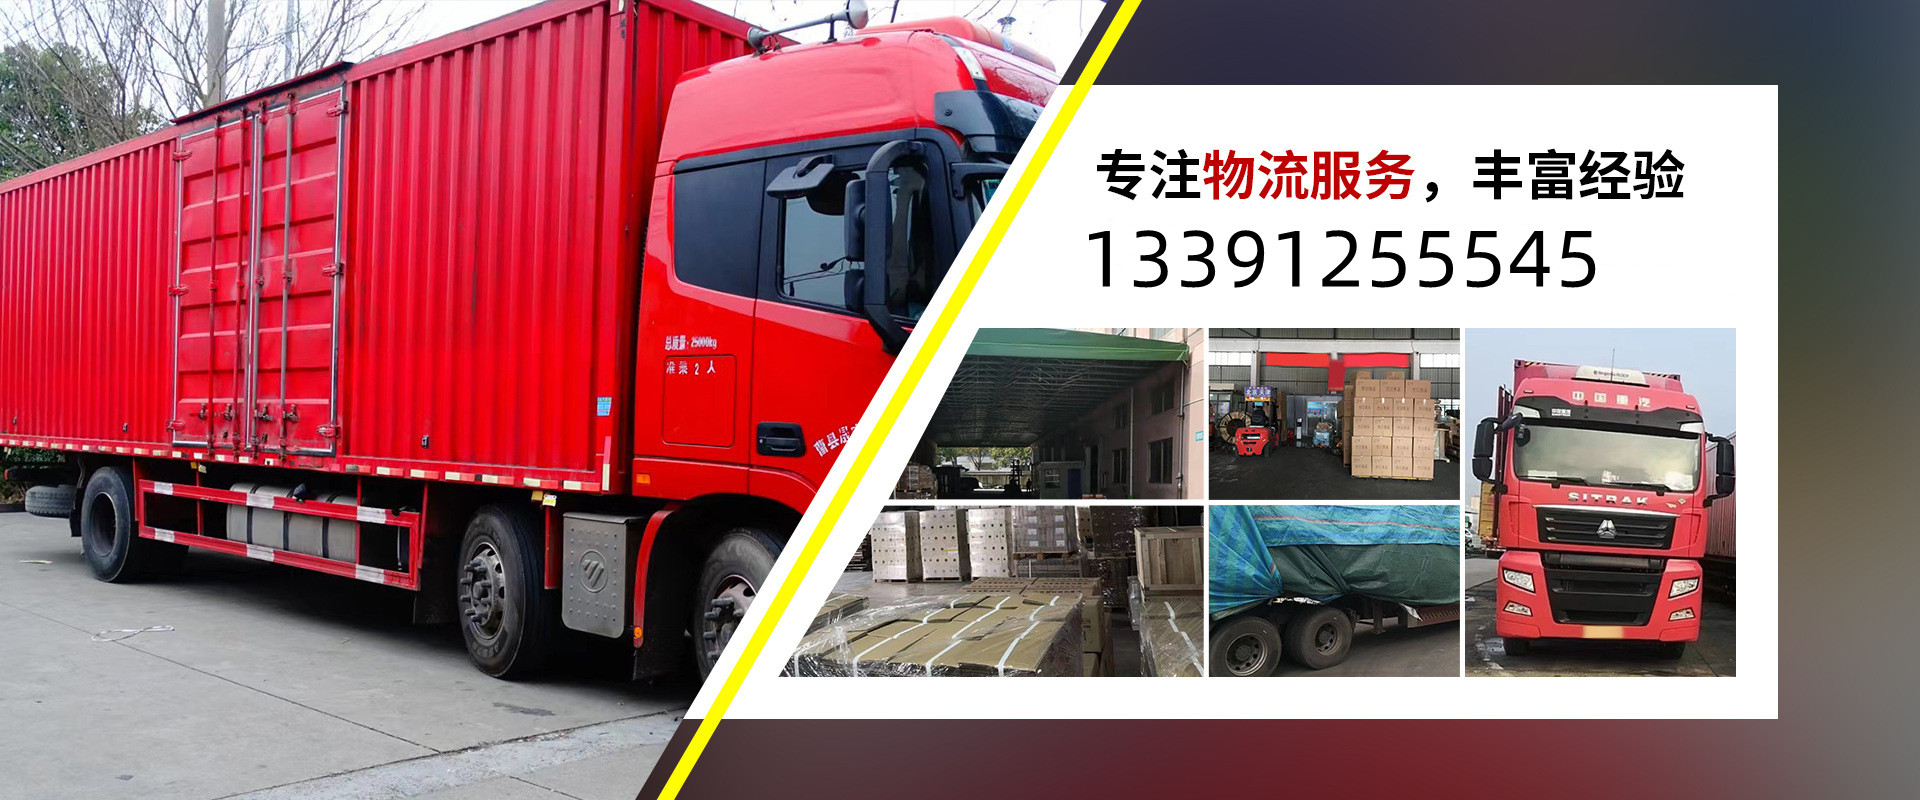 上海 物流专线运输公司、本地上海 物流专线运输公司、、上海 物流专线运输公司